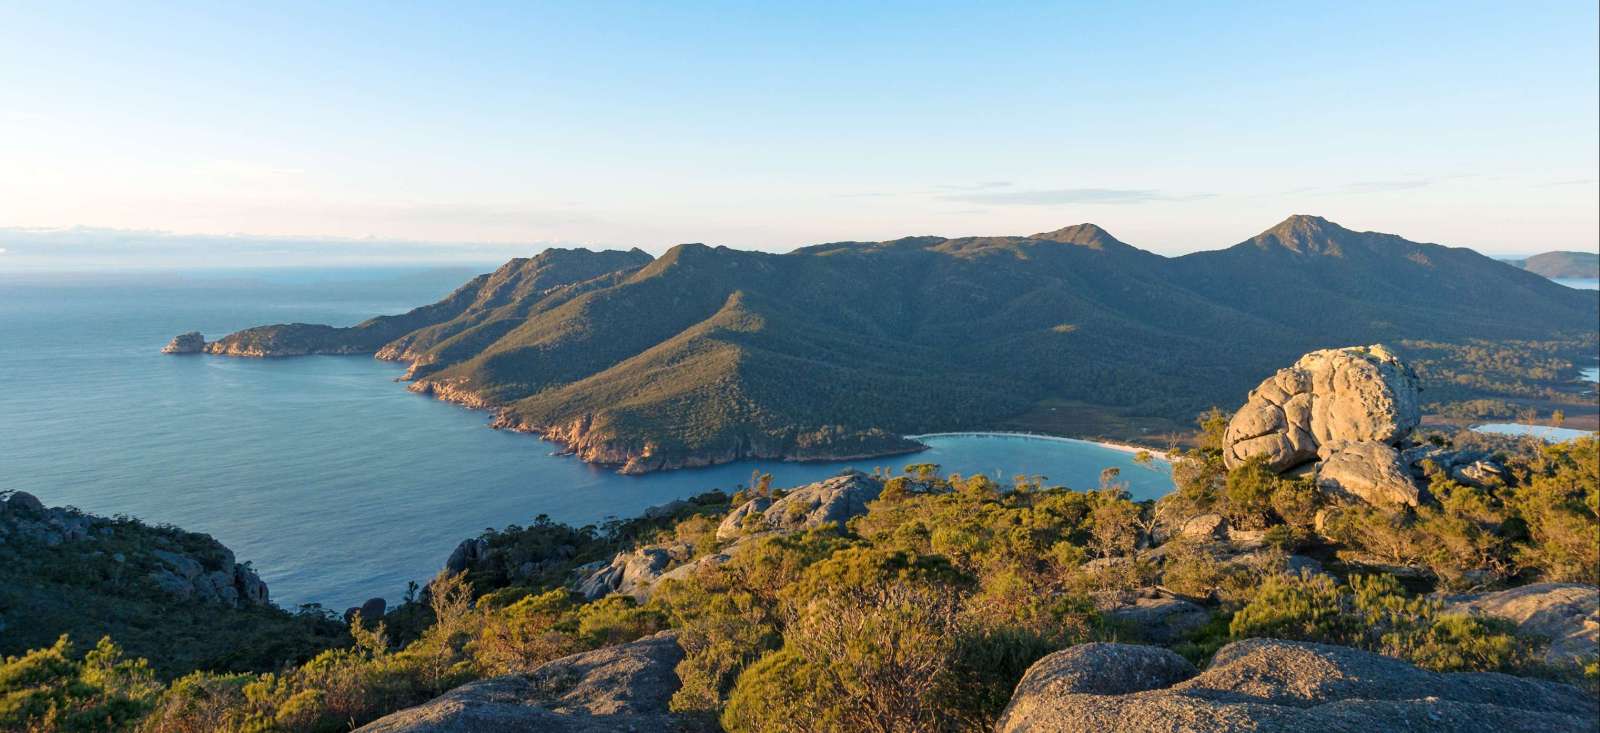 Voyage découverte - Australie : Tasmanie sauvage !